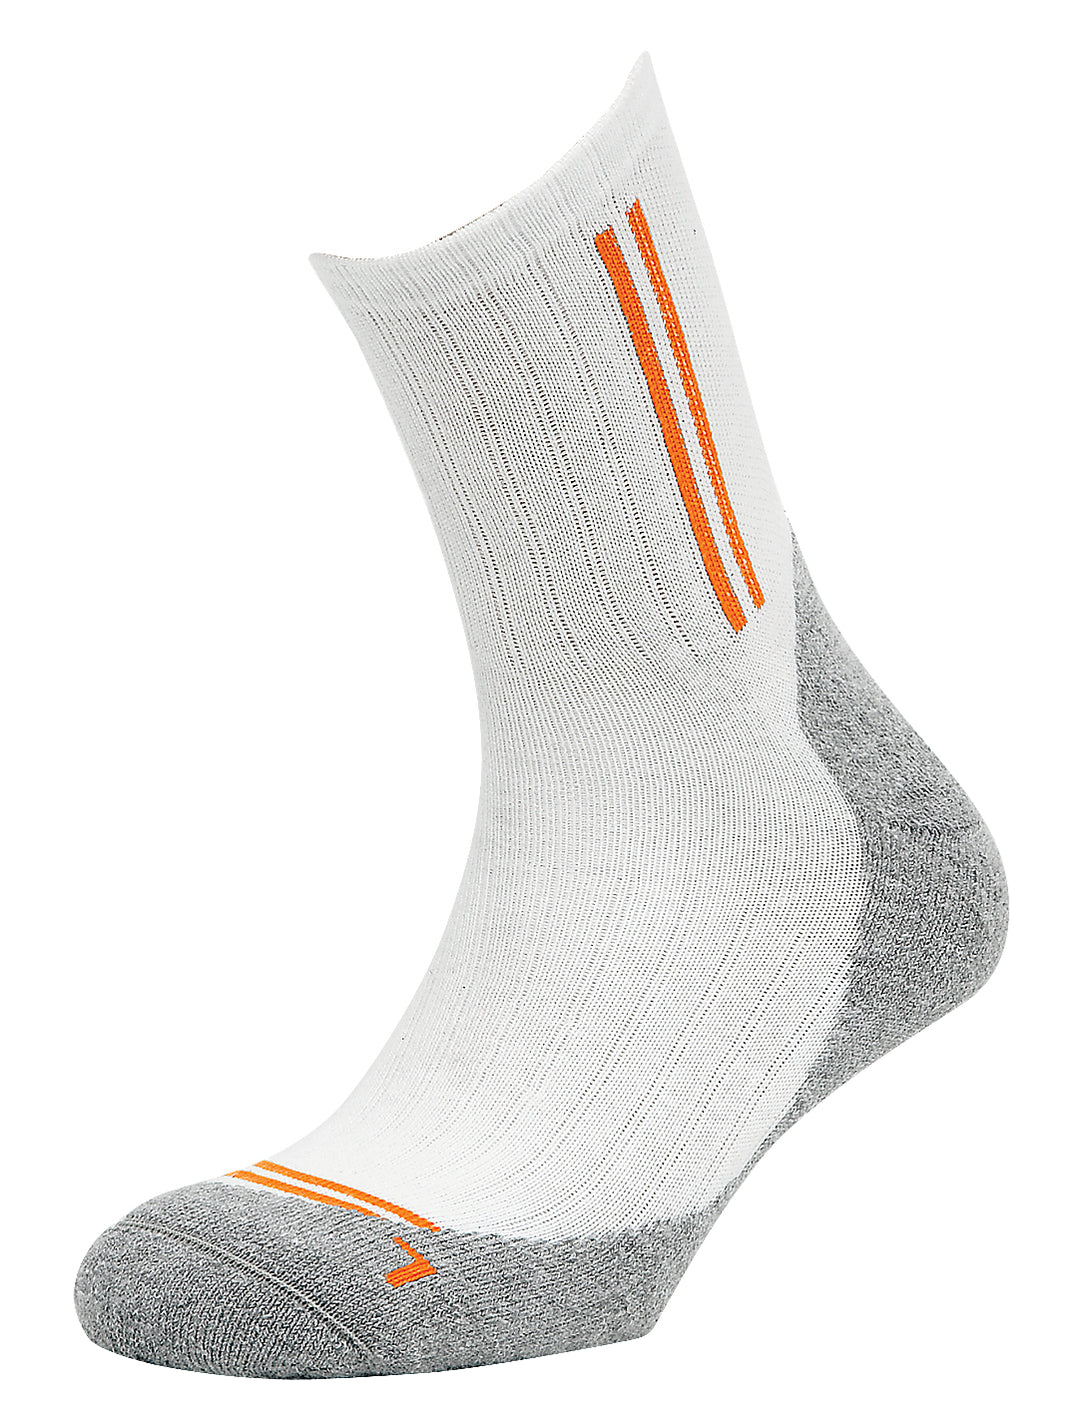 Sports socks Coolmax, women's 3110